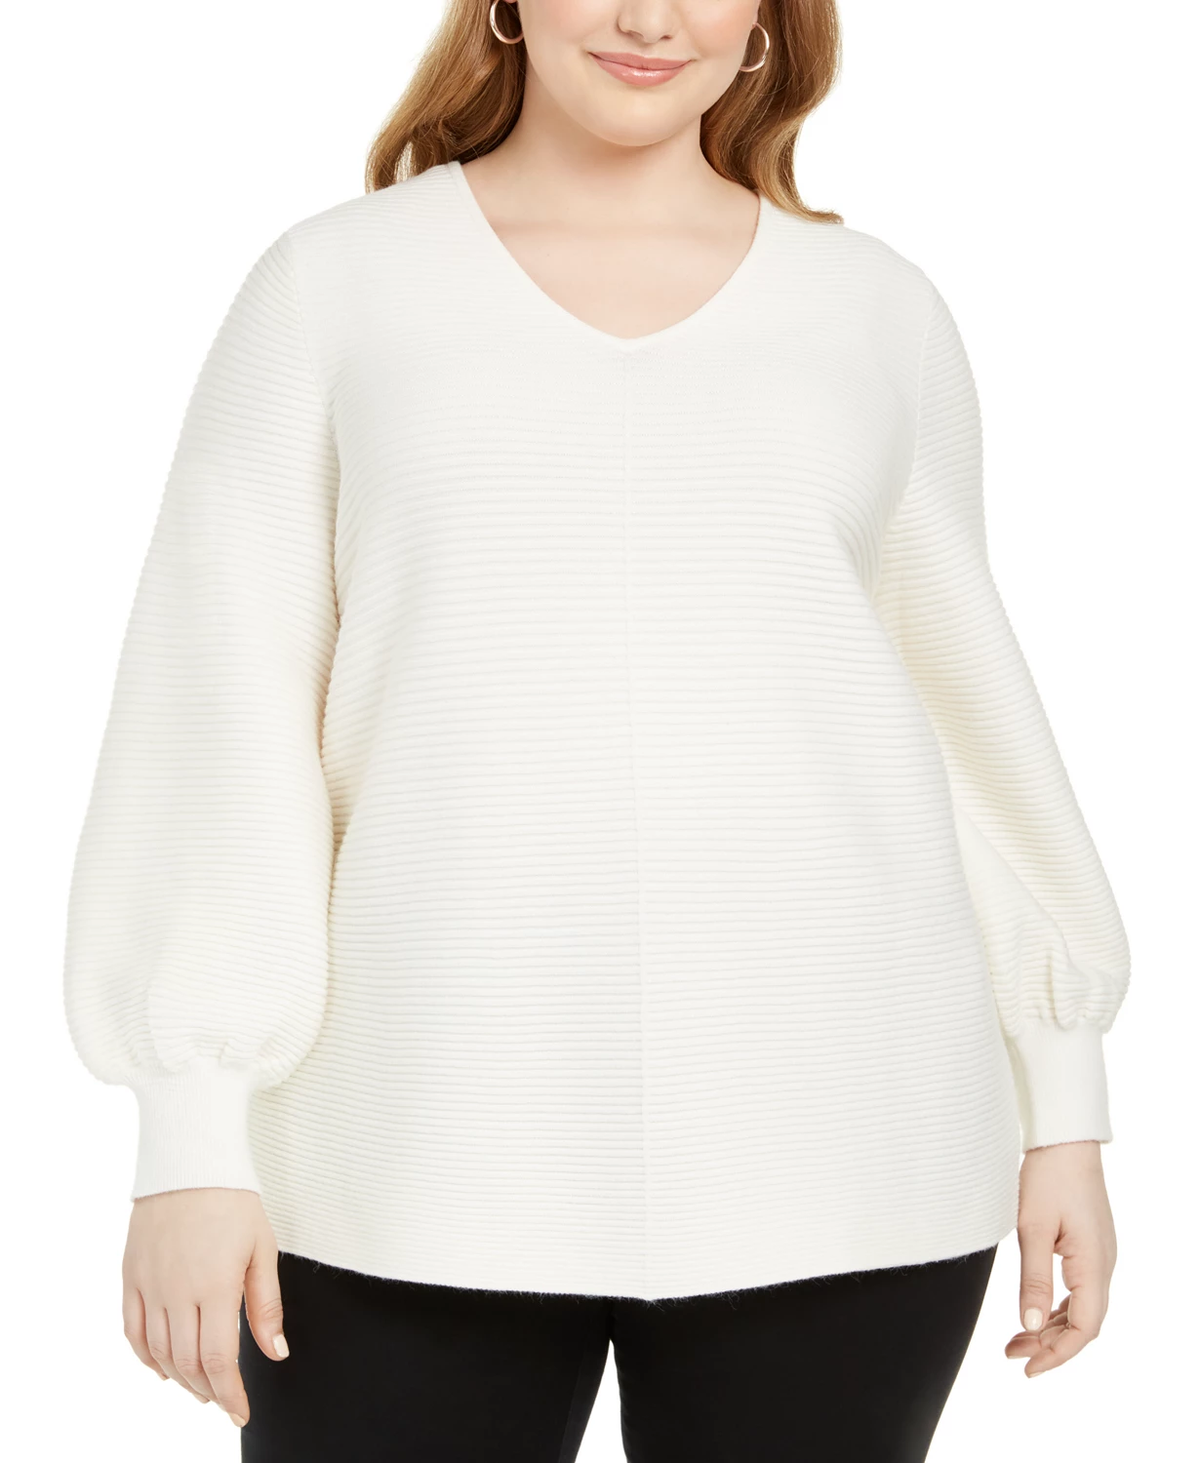 Alfani Plus Size White Ottoman-Stitch Sweater in Cloud